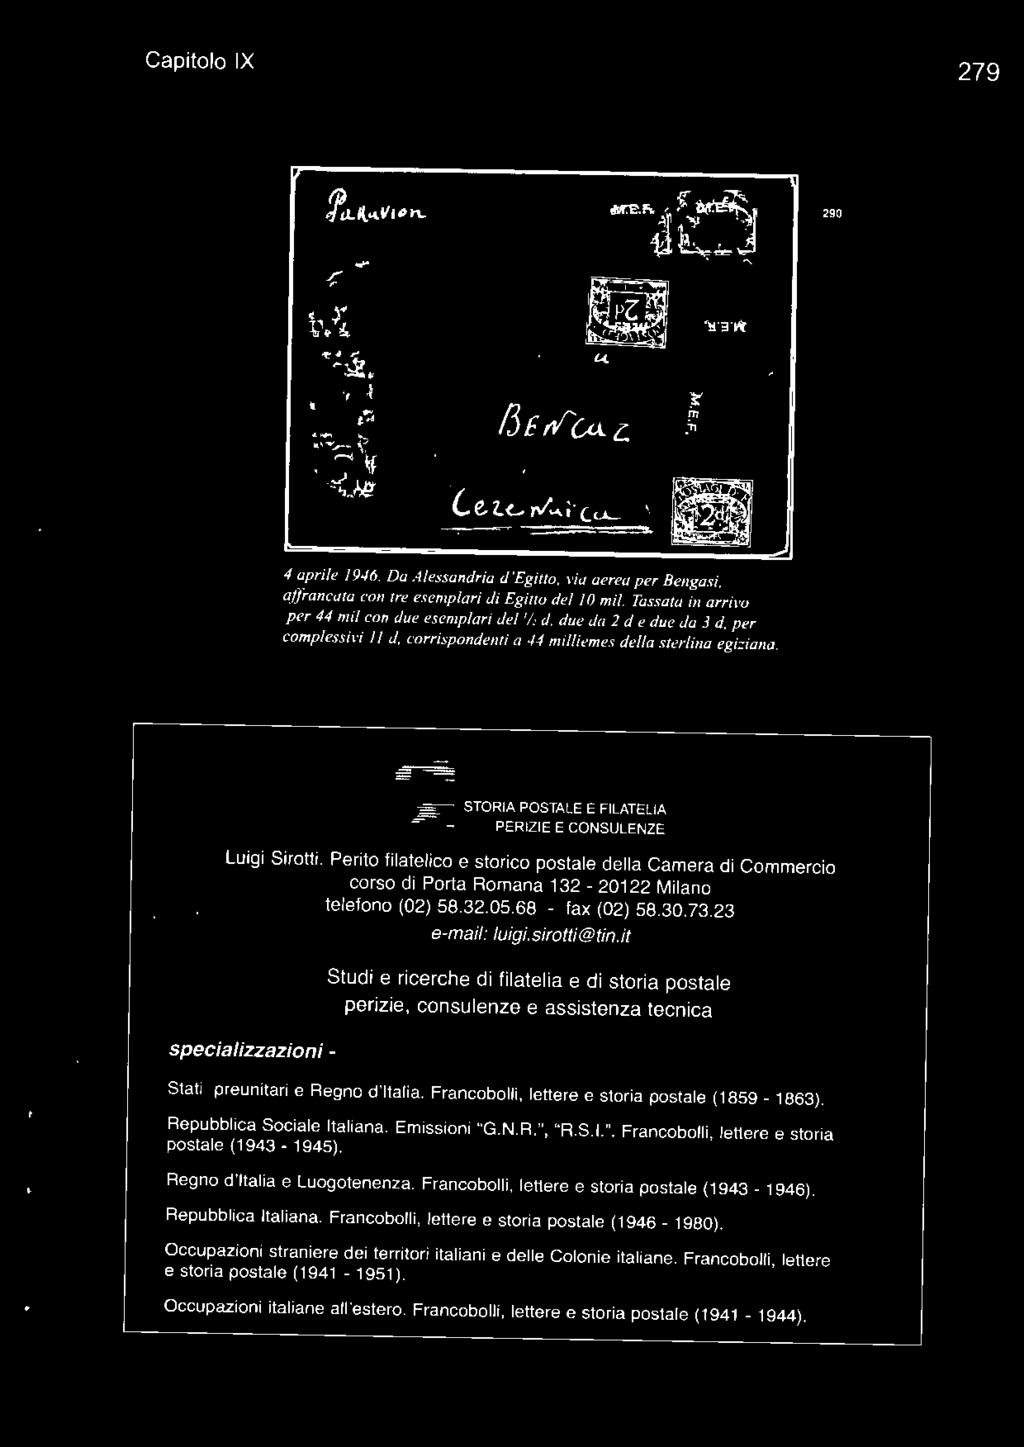 Francobolli, lettere e storia postale (1859-1863). Repubblica Sociale Italiana. Emissioni "G.N.R.", "R.S.I.". Francobolli, lettere e storia postale (1943-1945). Regno d'italia e Luogotenenza.